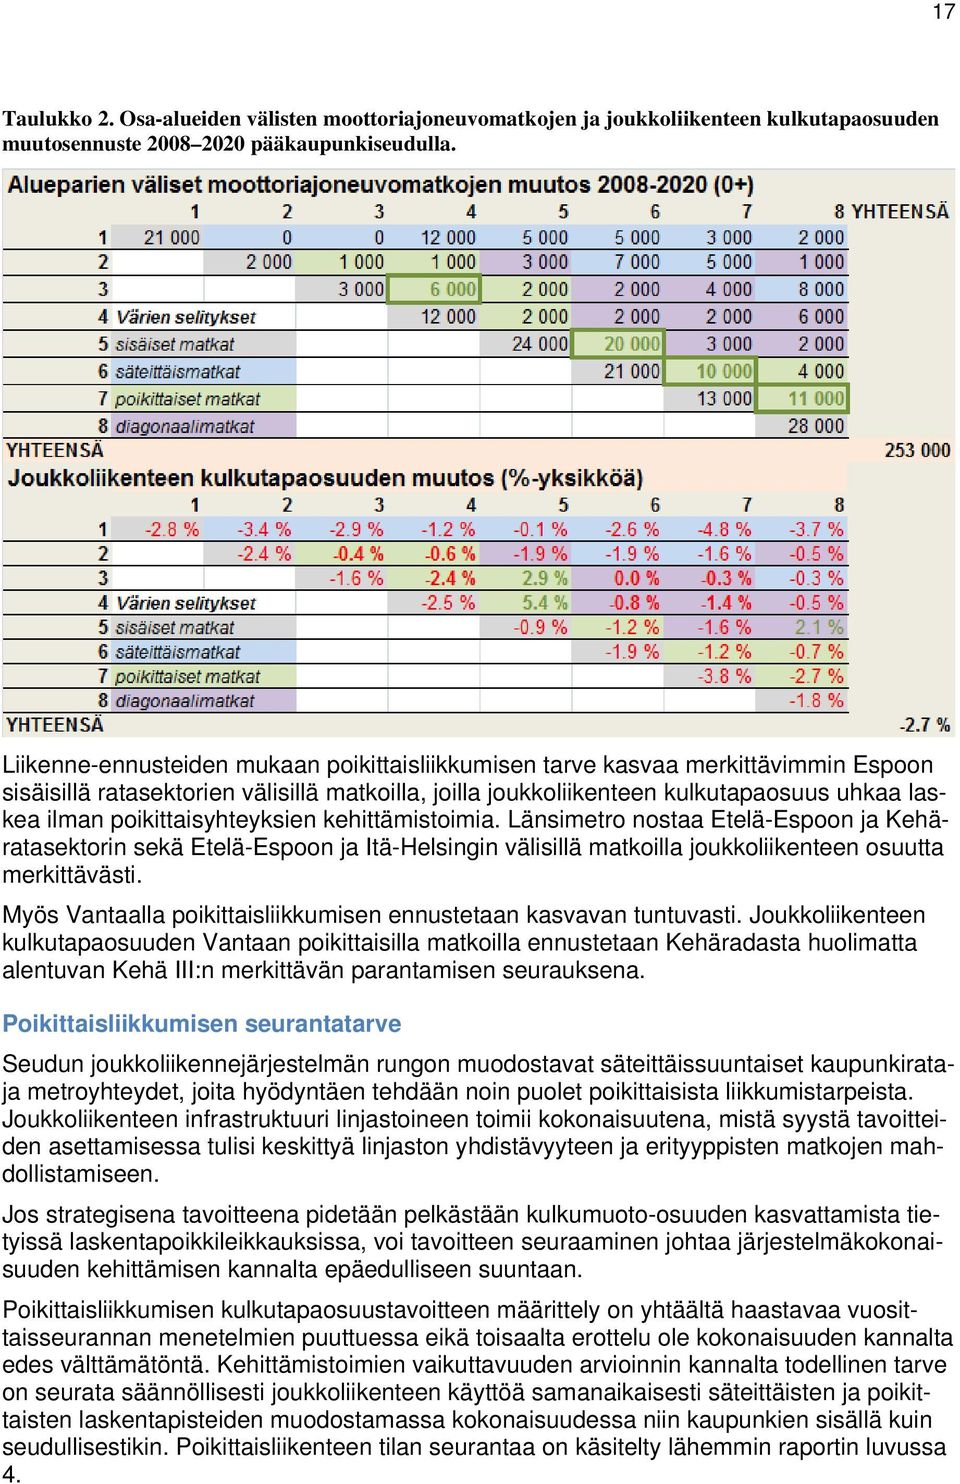 poikittaisyhteyksien kehittämistoimia. Länsimetro nostaa Etelä-Espoon ja Kehäratasektorin sekä Etelä-Espoon ja Itä-Helsingin välisillä matkoilla joukkoliikenteen osuutta merkittävästi.